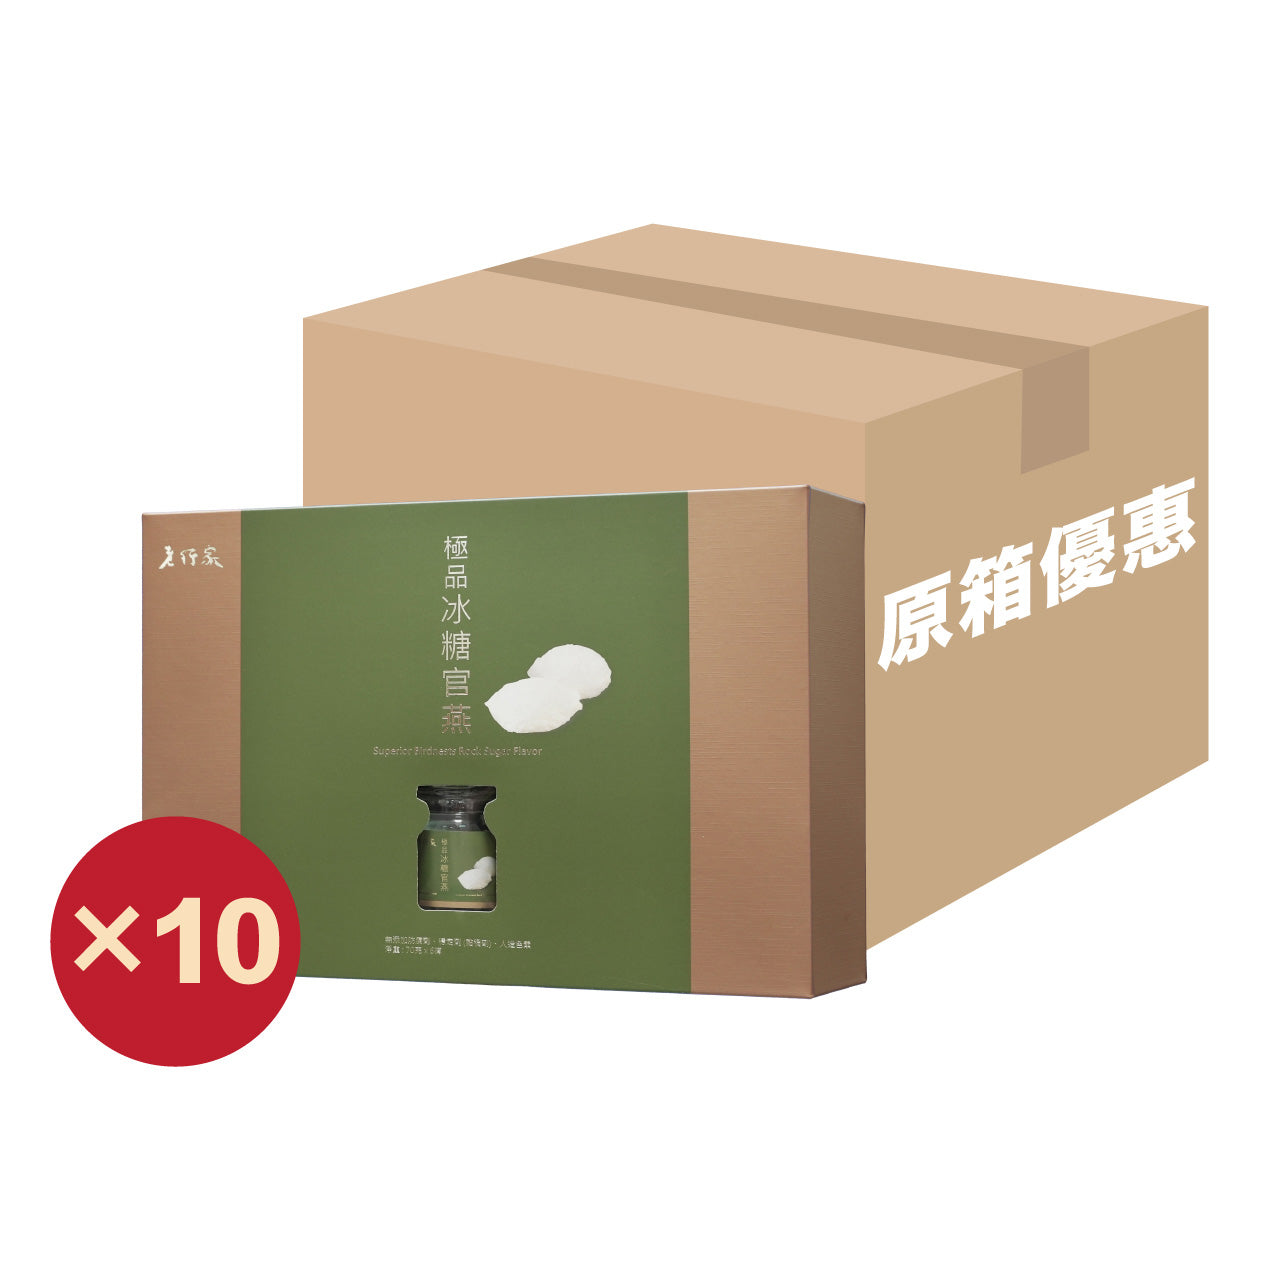 【原箱優惠】老行家極品冰糖官燕禮盒(10盒)